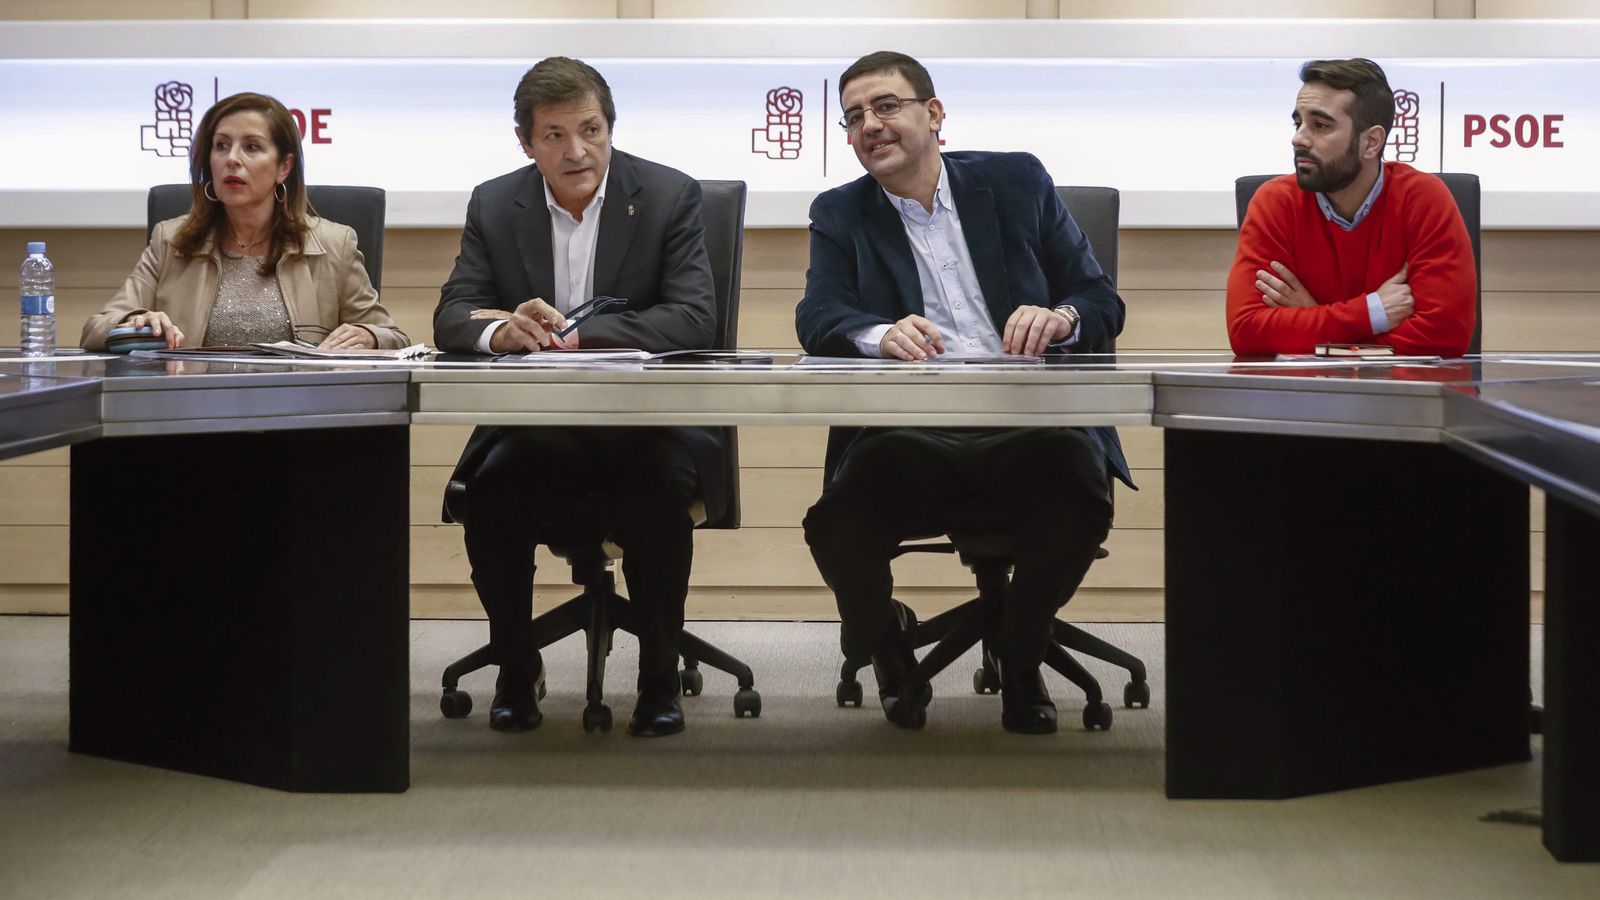 Foto: Lola Padrón, Javier Fernández, Mario Jiménez y José Muñoz, este 26 de enero en la reunión de la gestora del PSOE. (EFE)